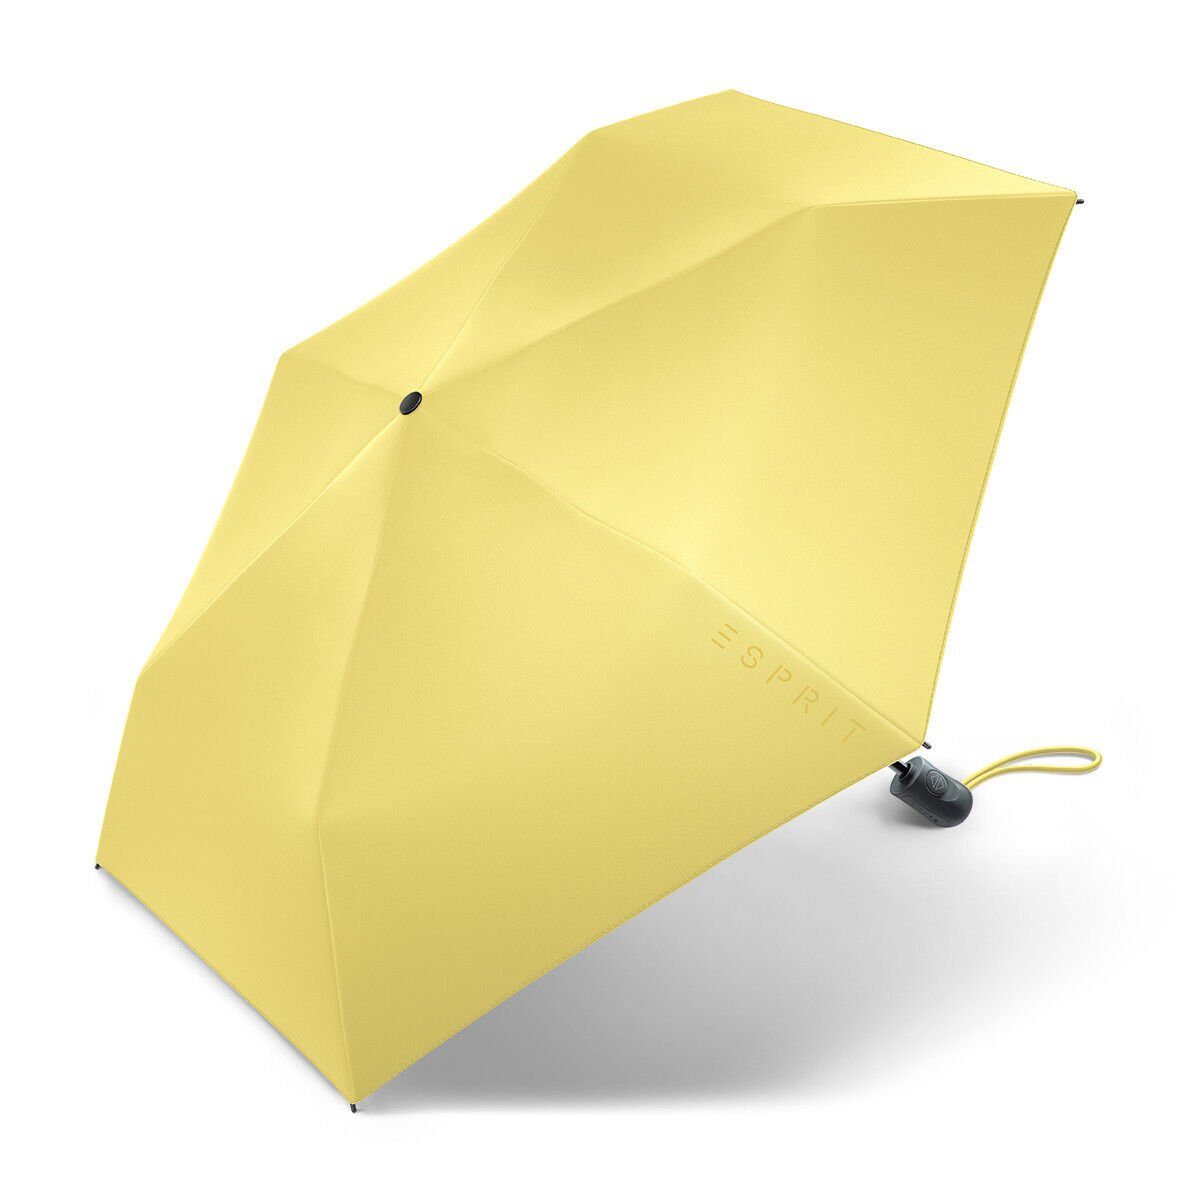 Esprit Taschenregenschirm